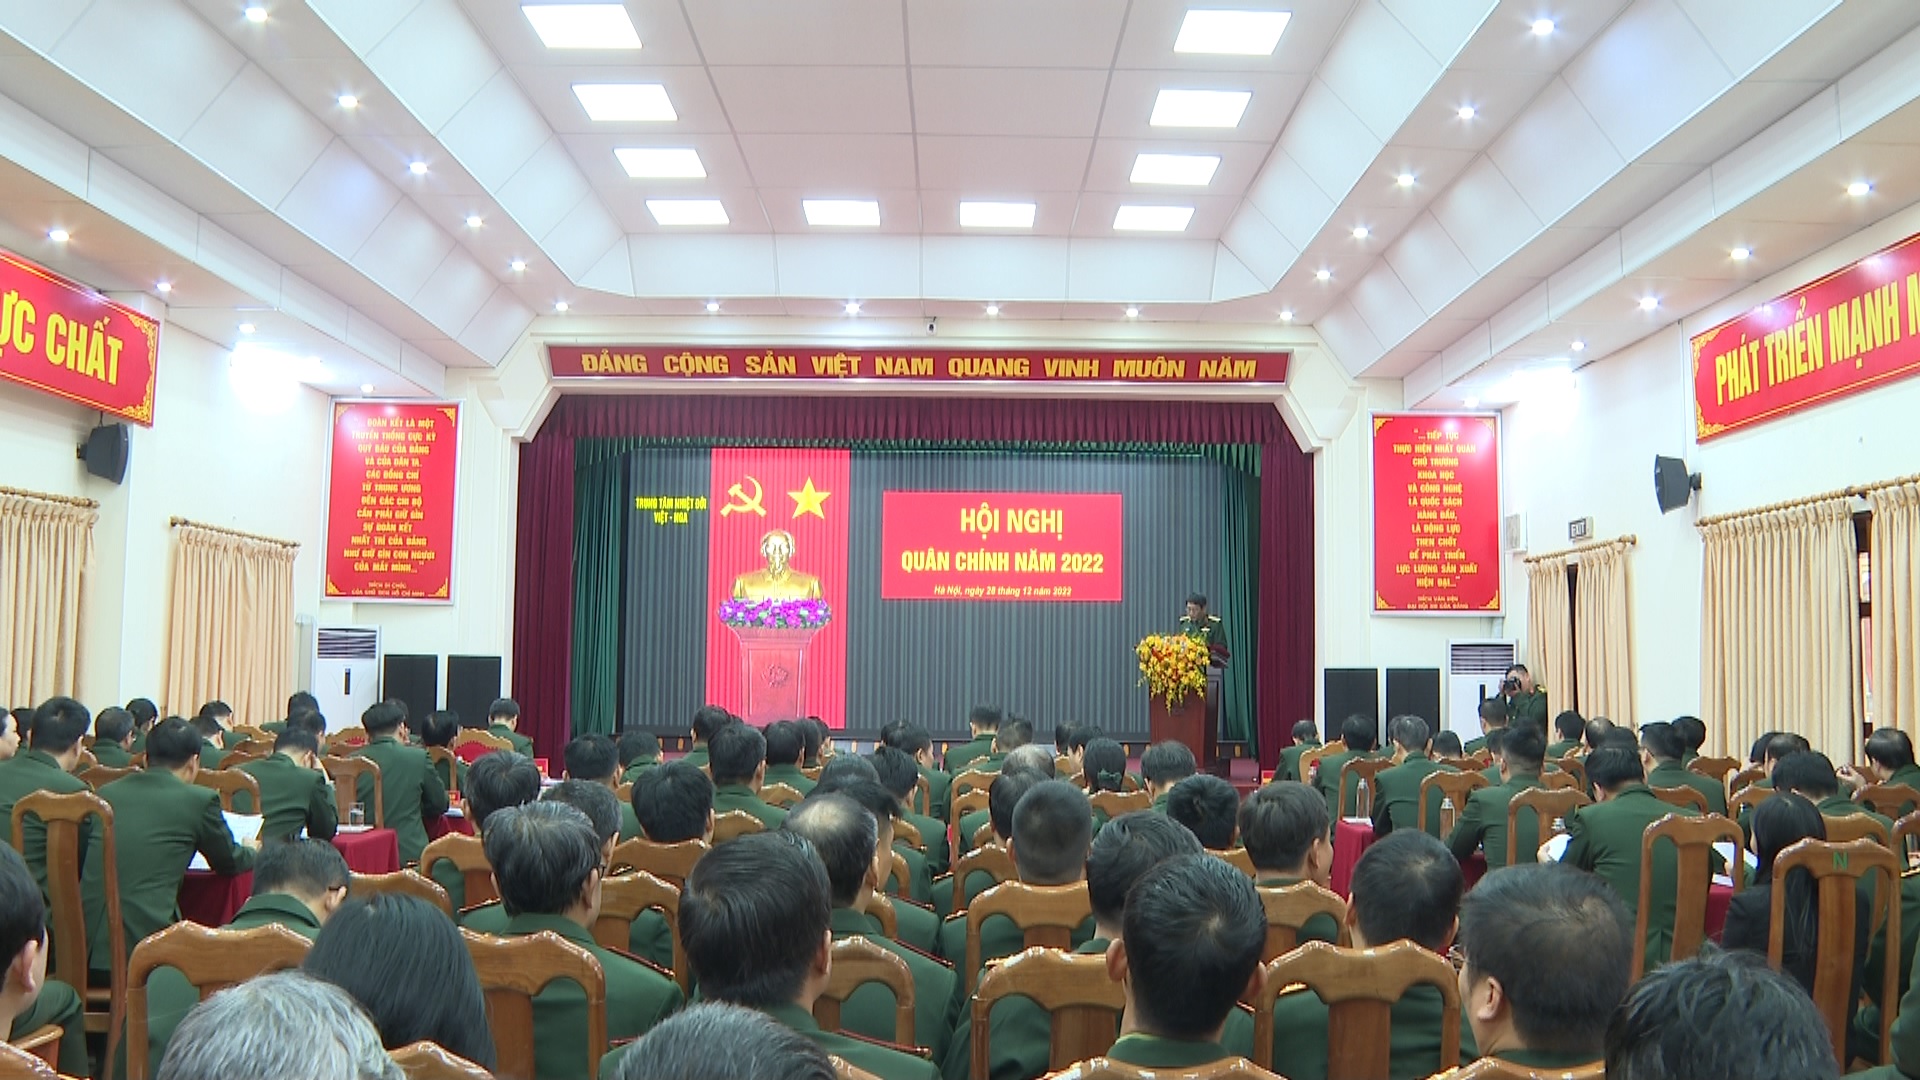 Hội nghị Quân chính Trung tâm Nhiệt đới Việt - Nga năm 2022